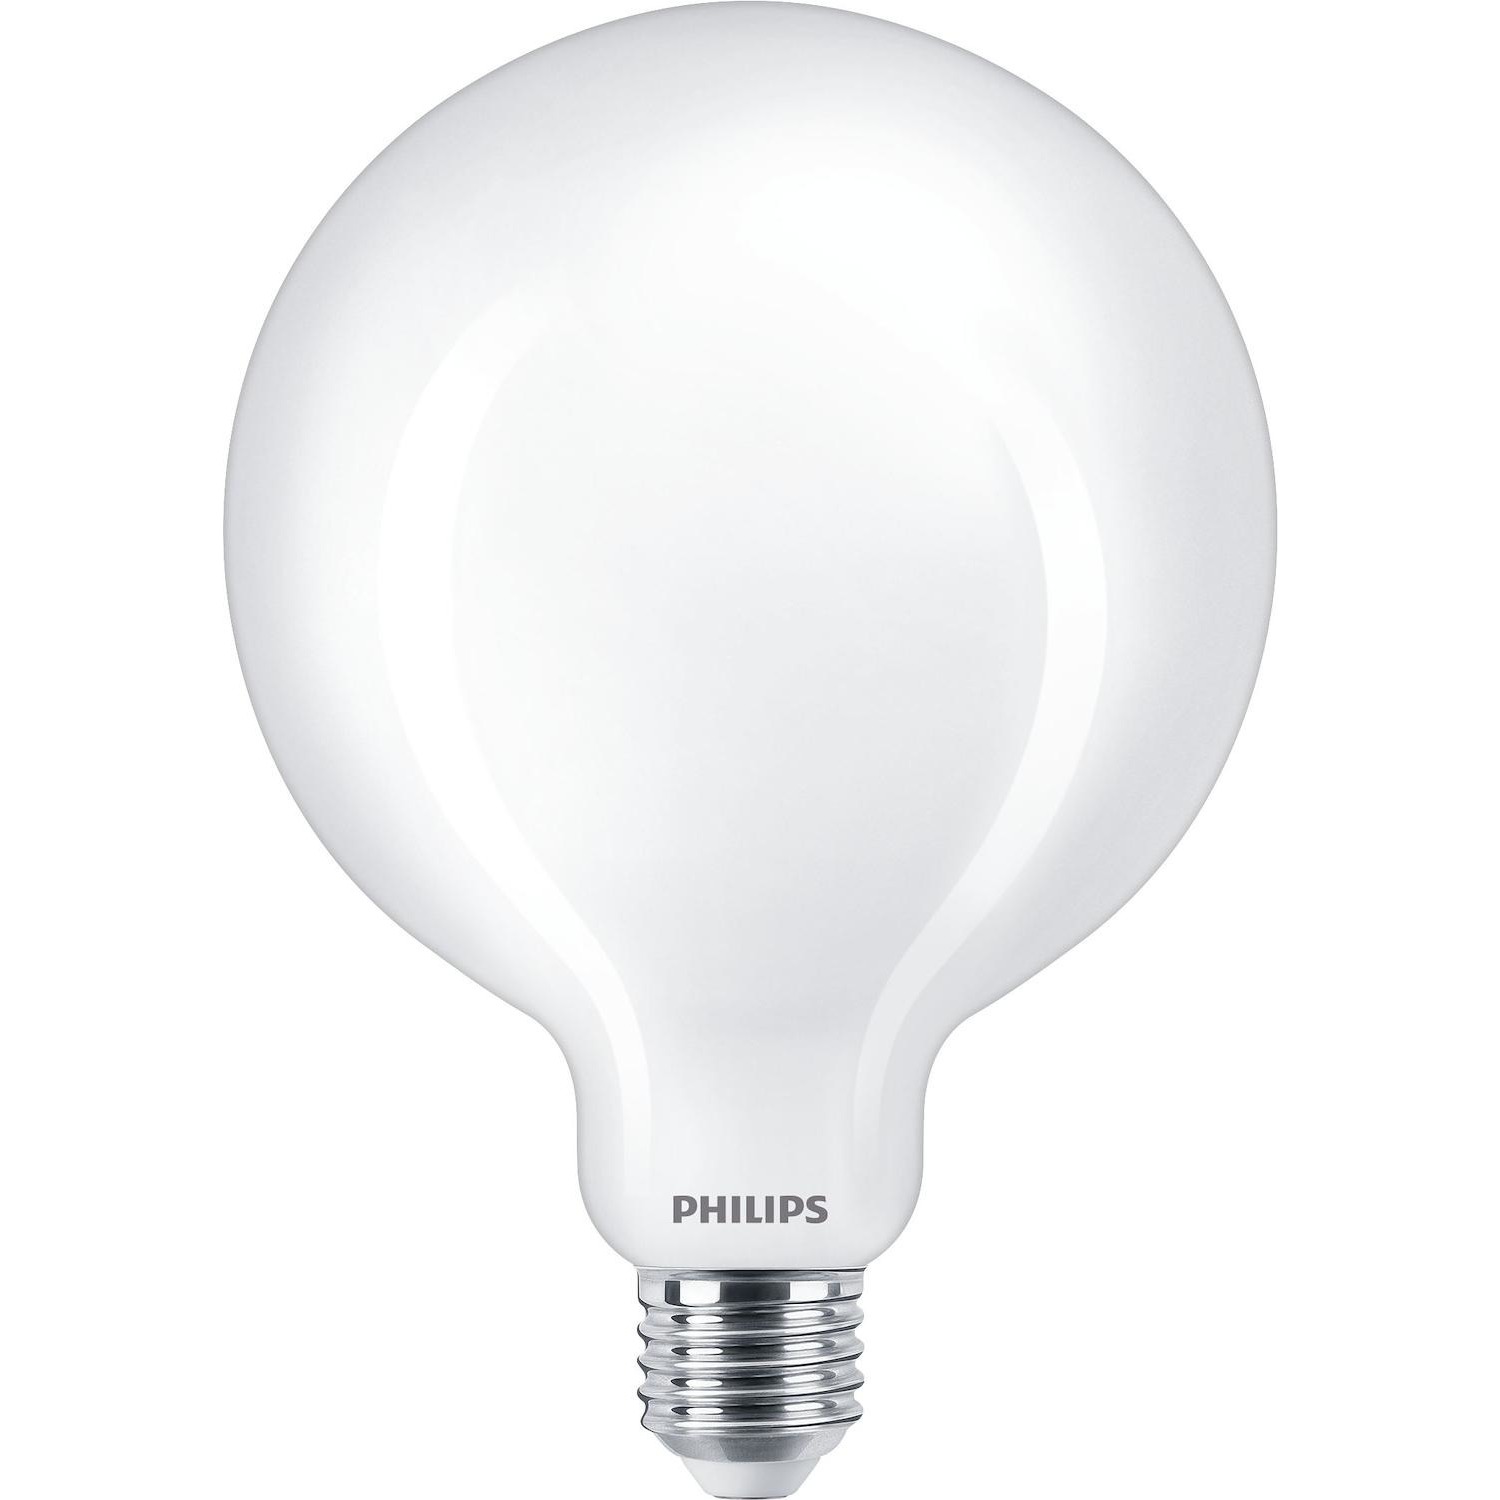 Immagine per Lampadina Philips globo satinata E27 120W da DIMOStore